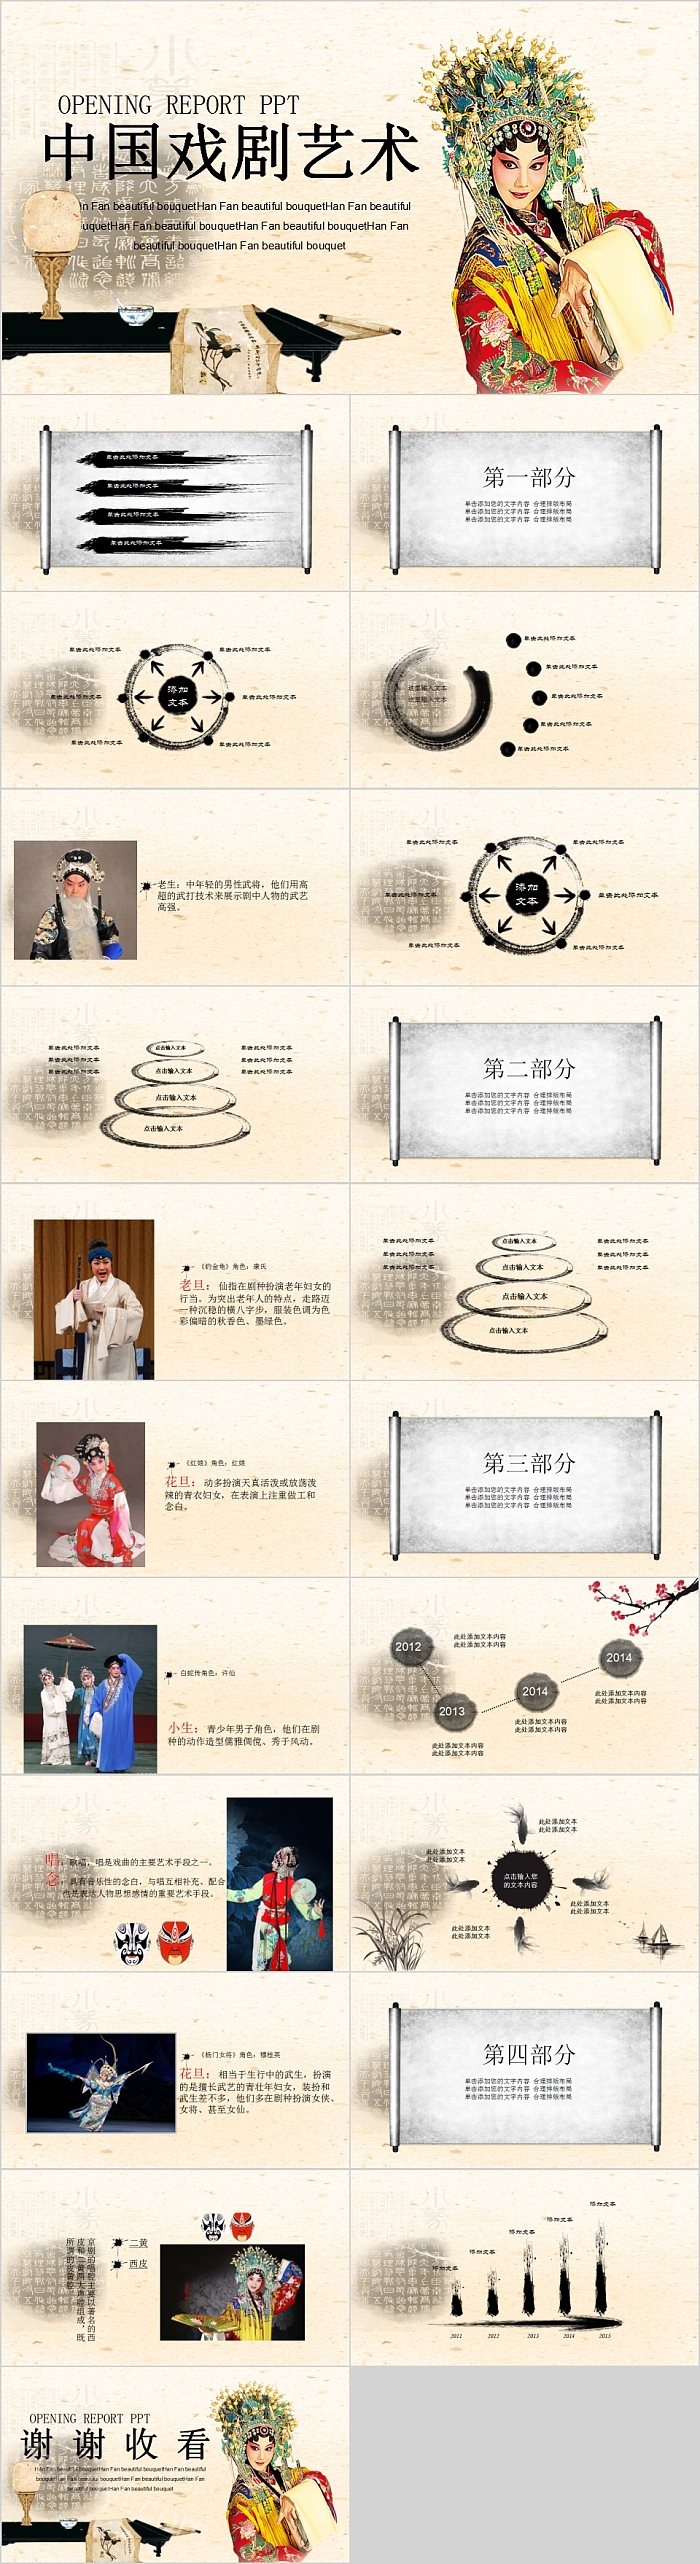 中国戏剧艺术戏曲文化PPT模板